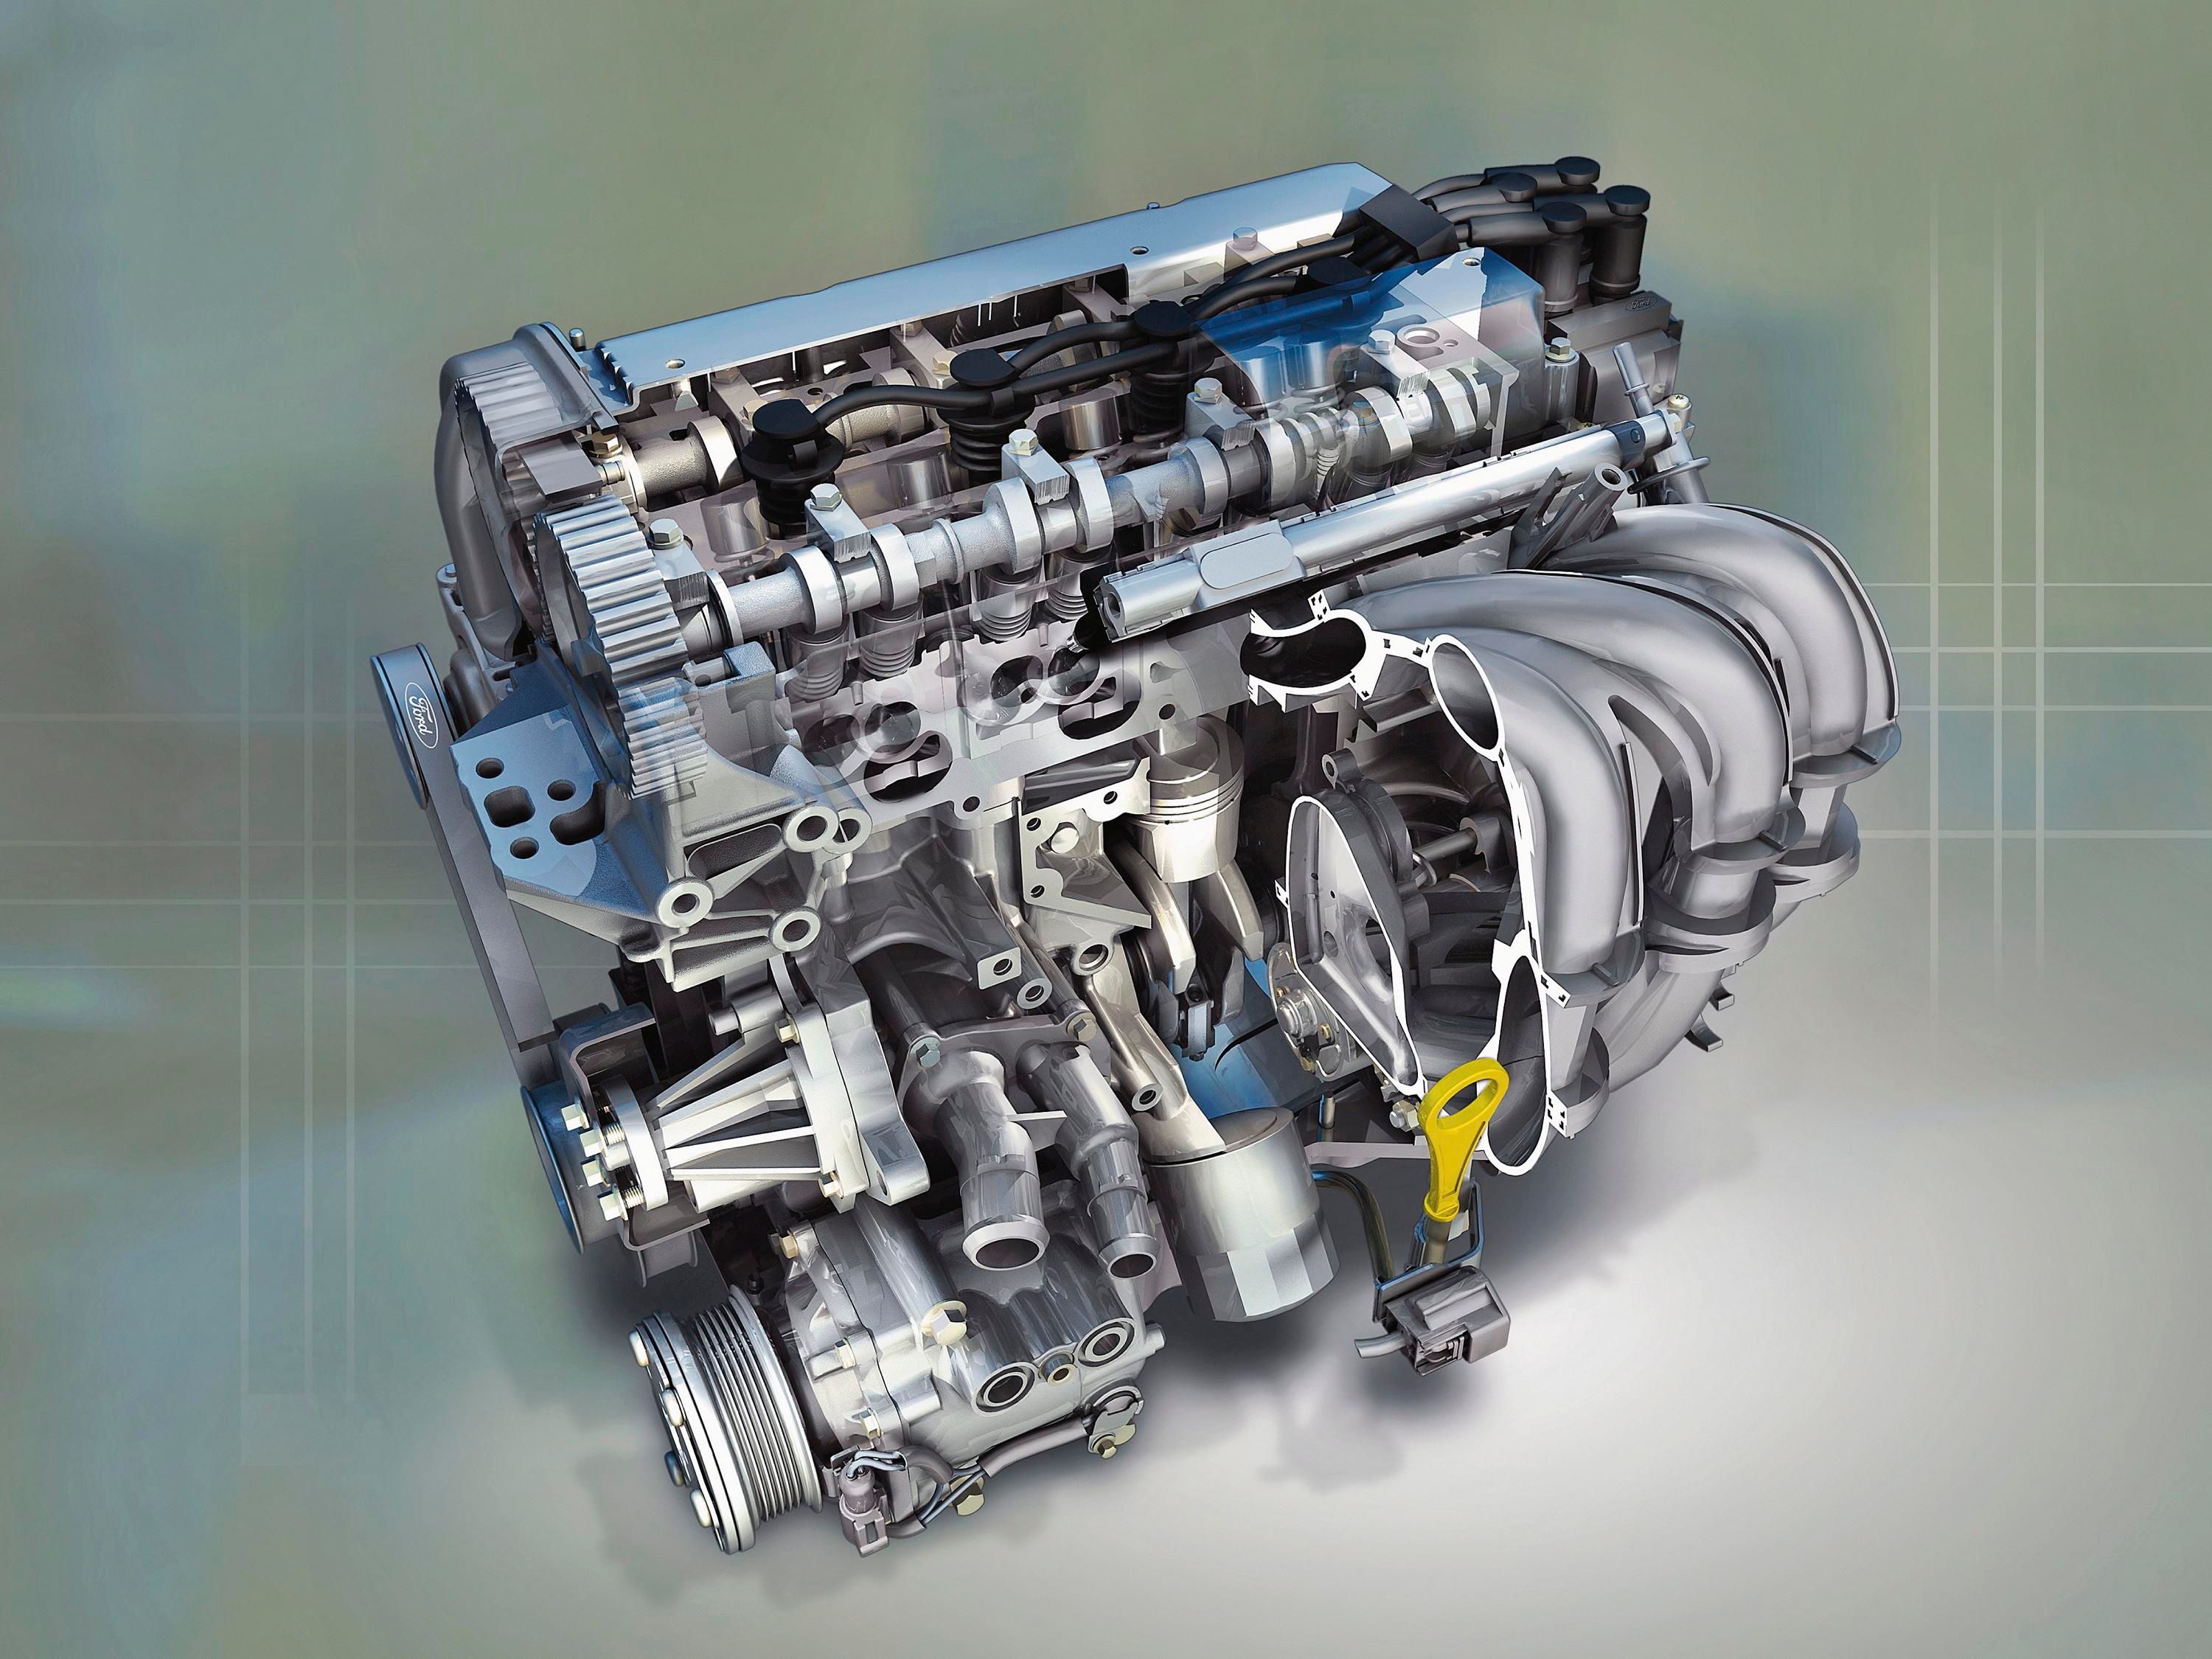 1.6 l duratec ti vct sigma. Двигатель Форд дюратек 2.0. Двигатель Форд Duratec 1.6. Двигатель Форд фокус 2 2.0. 1.6L Duratec ti-VCT (105ps) - Sigma.